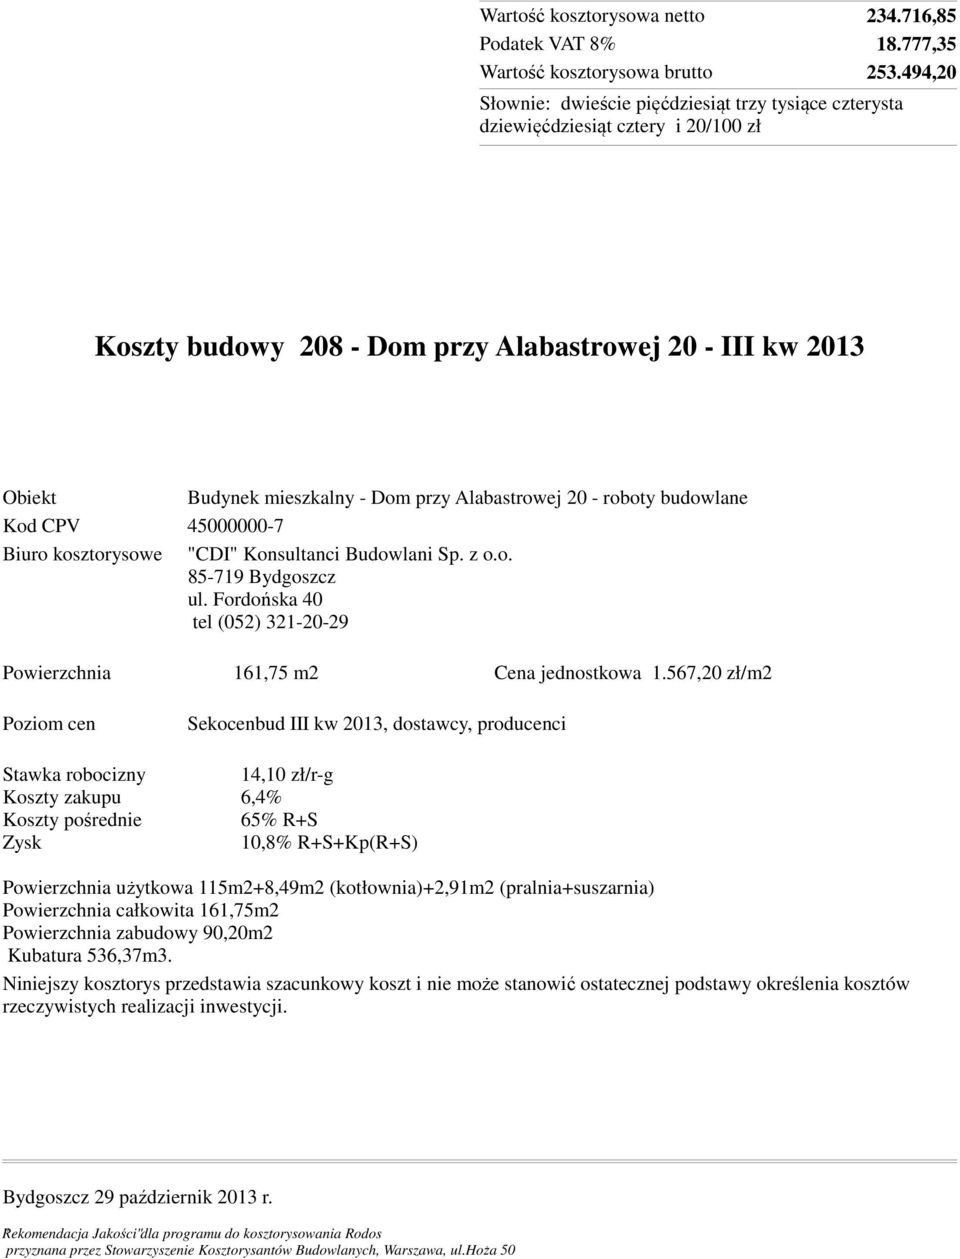 kosztorysowe "CDI" Konsultanci Budowlani Sp. z o.o. 85-719 Bydgoszcz ul. Fordońska 40 tel (052) 321-20-29 Powierzchnia 161,75 m2 Cena jednostkowa 1.